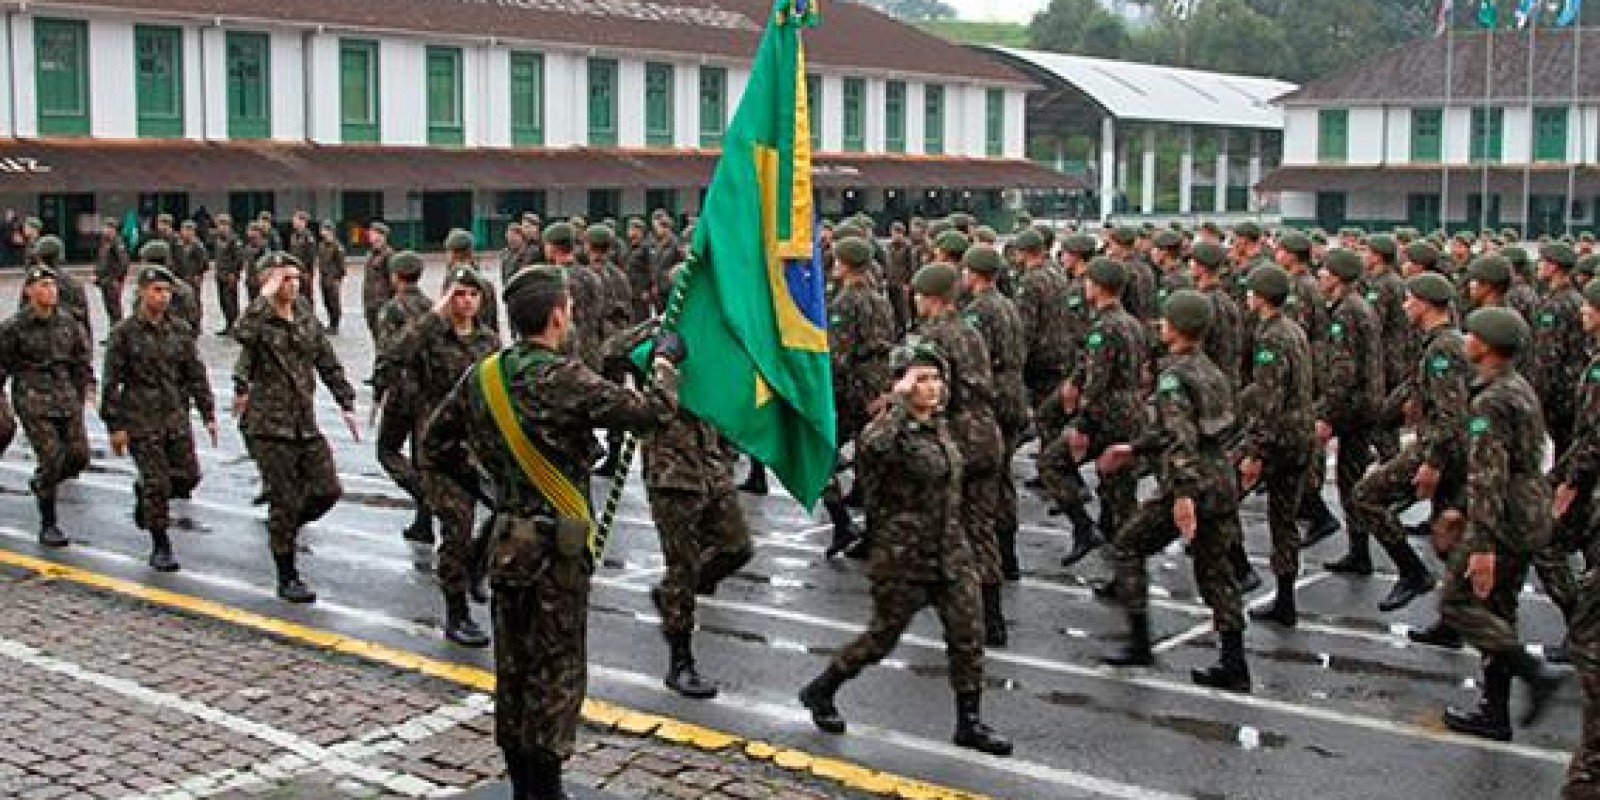 Comemorações da Semana do Soldado no 62º Batalhão de Infantaria